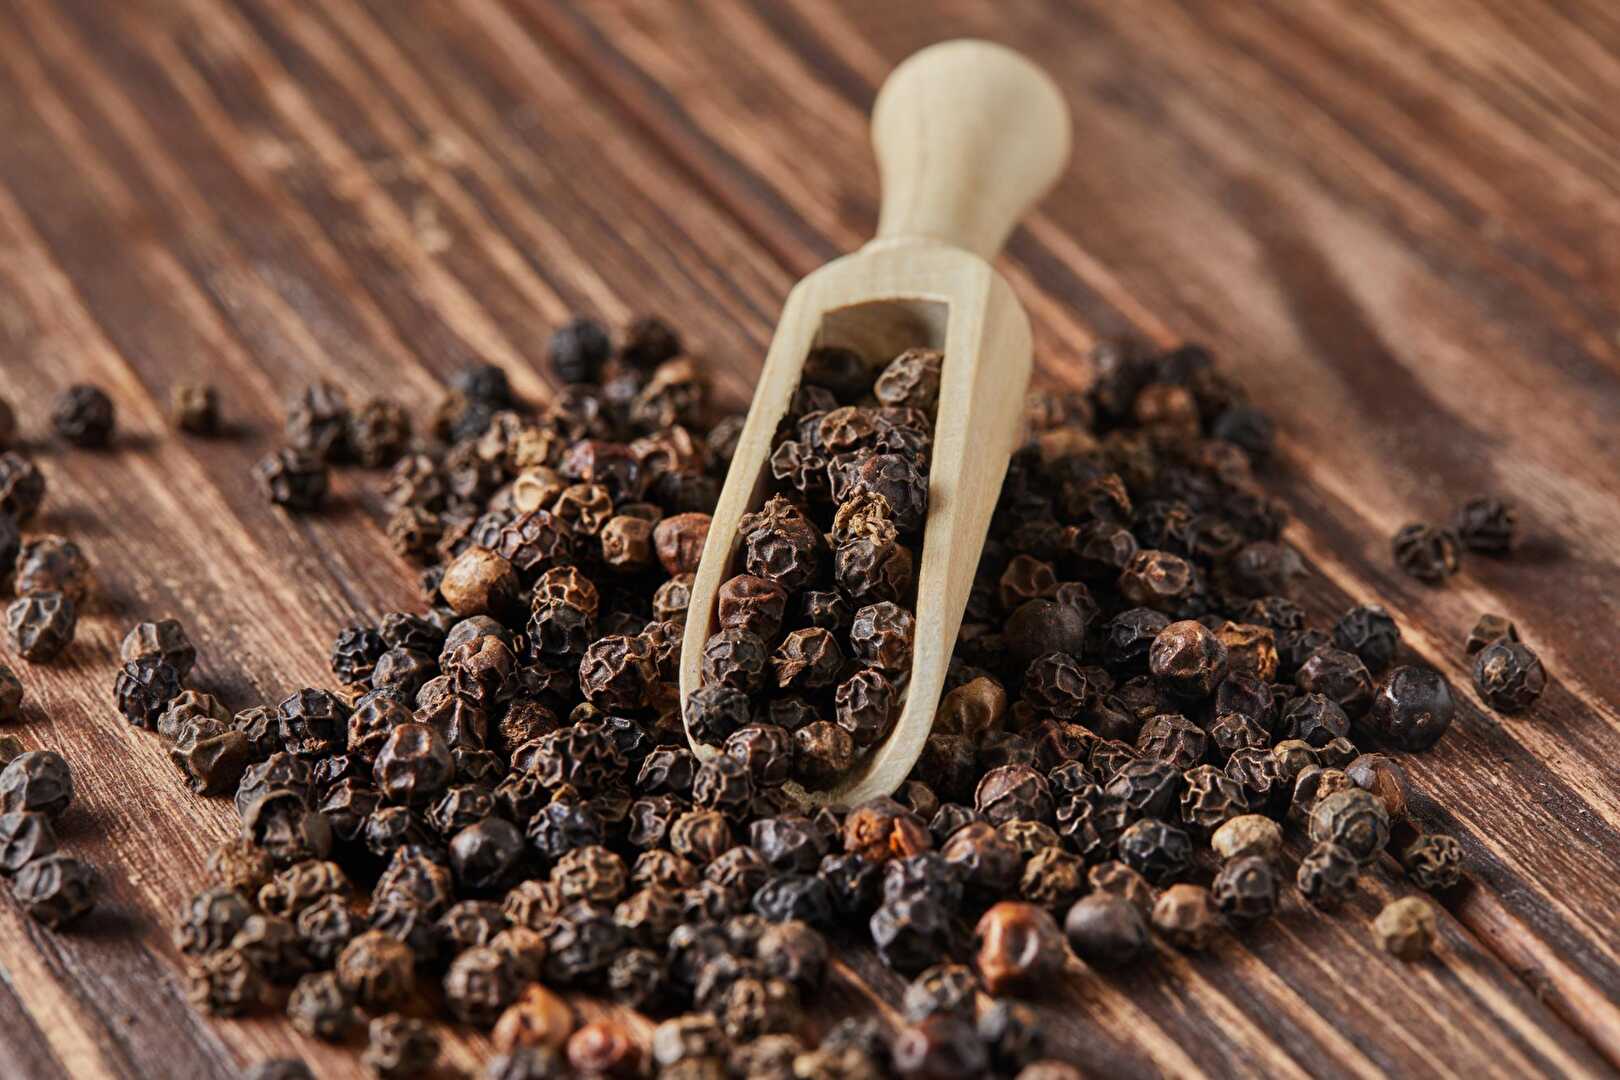 Découvrez le potentiel insoupçonné du poivre noir en grains dans votre cuisine quotidienne